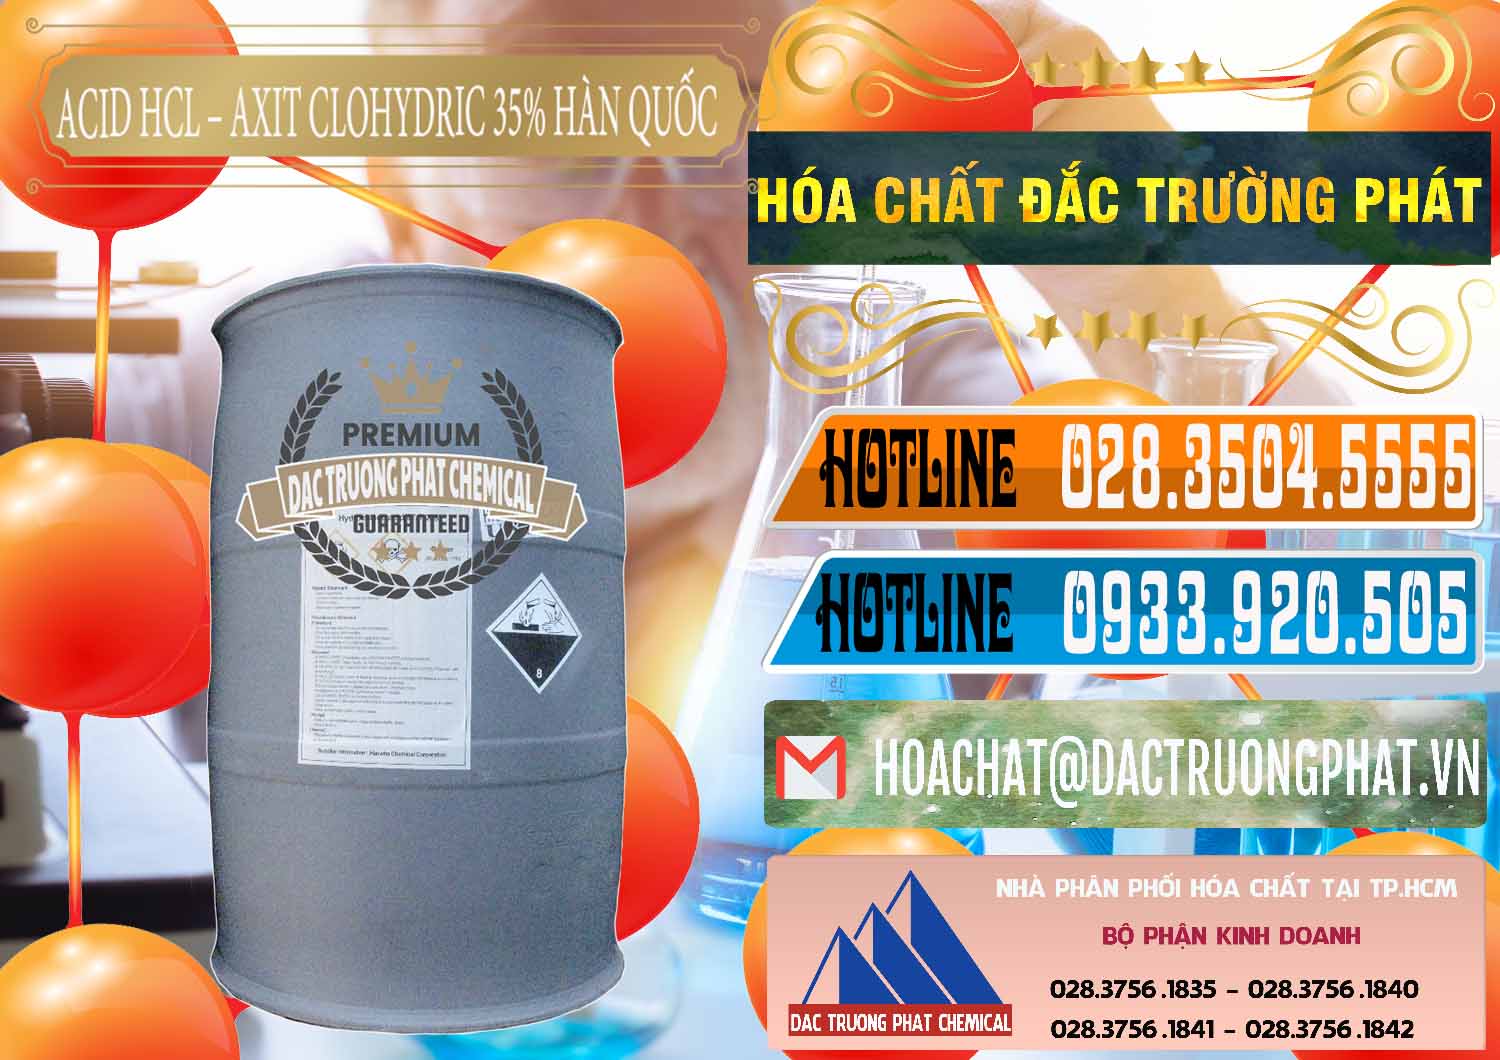 Nơi nhập khẩu - bán Acid HCL - Axit Cohidric 35% Hàn Quốc Korea - 0011 - Đơn vị cung ứng & phân phối hóa chất tại TP.HCM - stmp.net